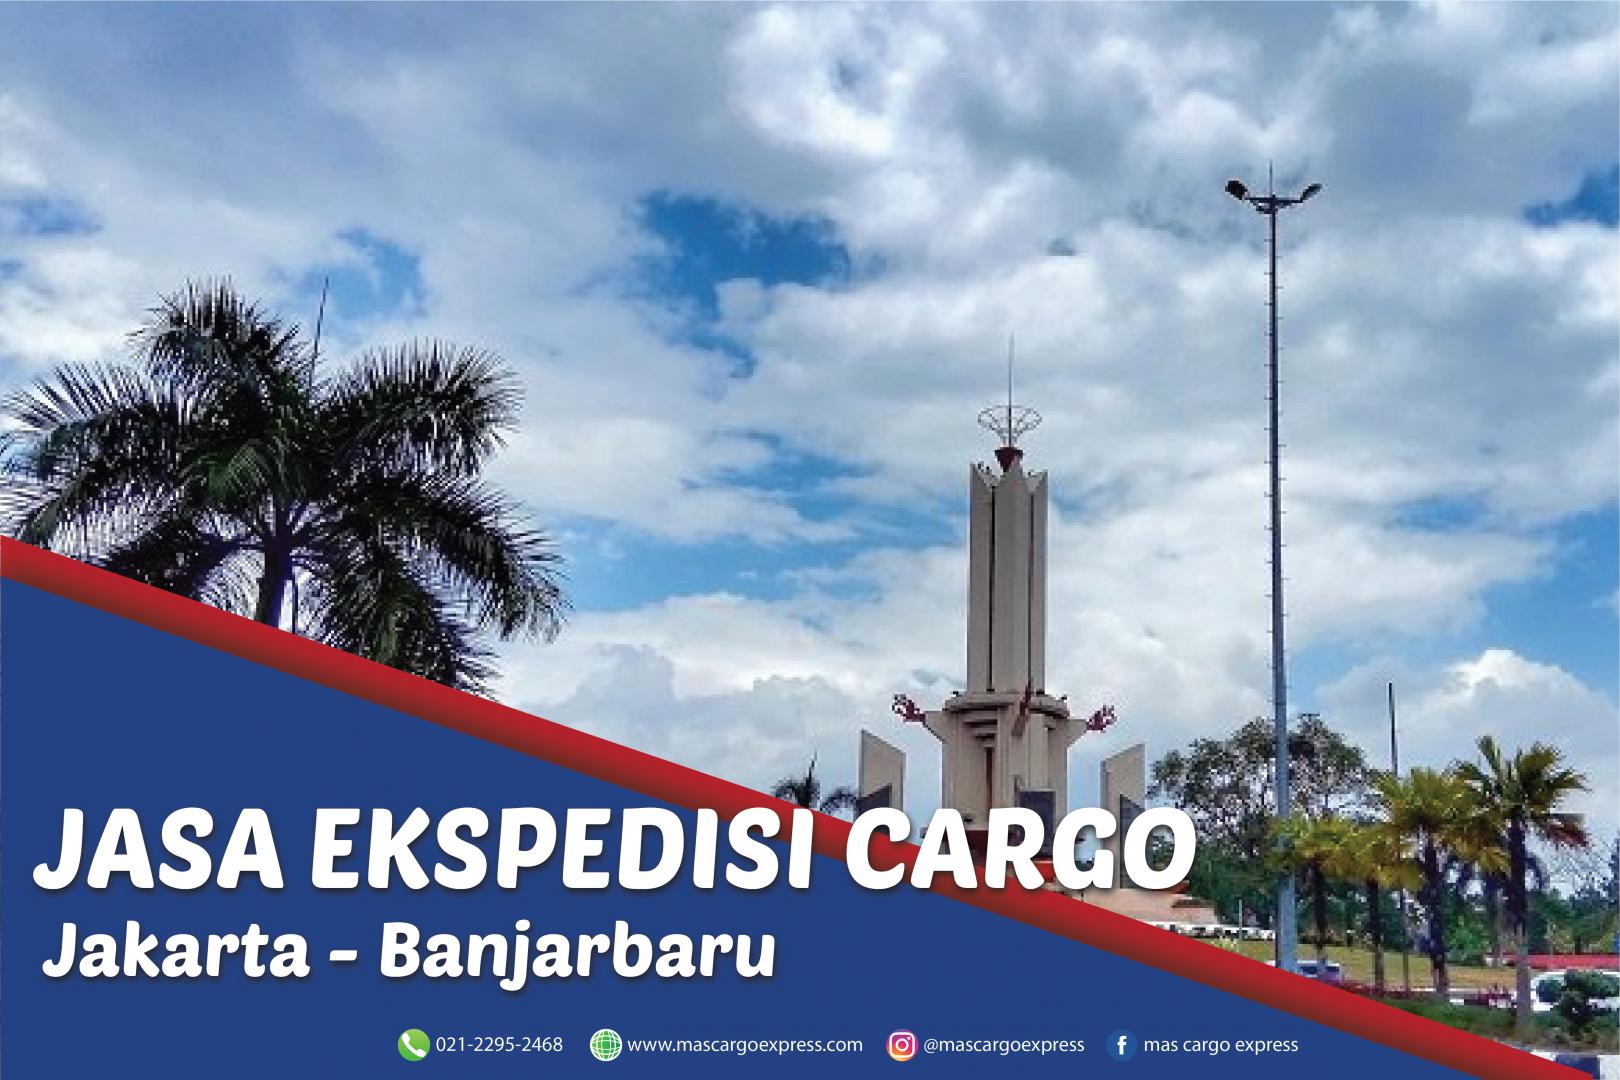 Jasa Ekspedisi Cargo Jakarta ke Banjarbaru Murah, Cepat ,Aman dan Bergaransi